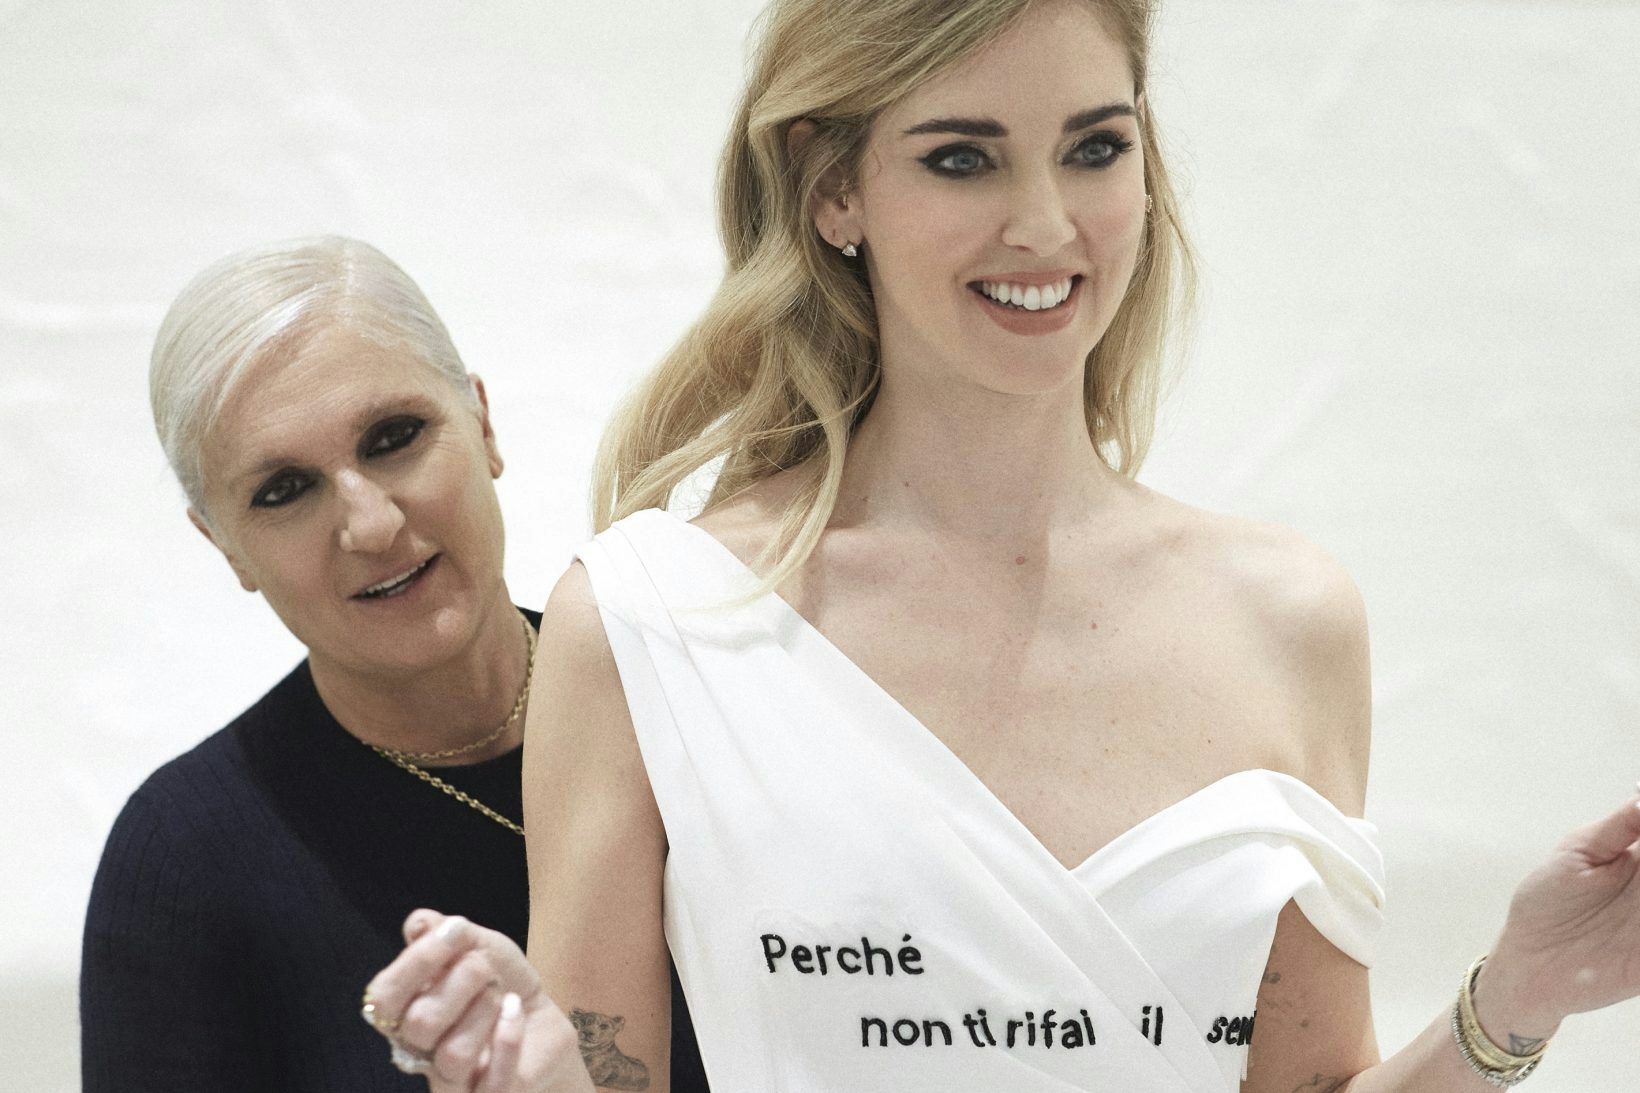 Les robes subversives de Chiara Ferragni par Dior: une liberté gagnée